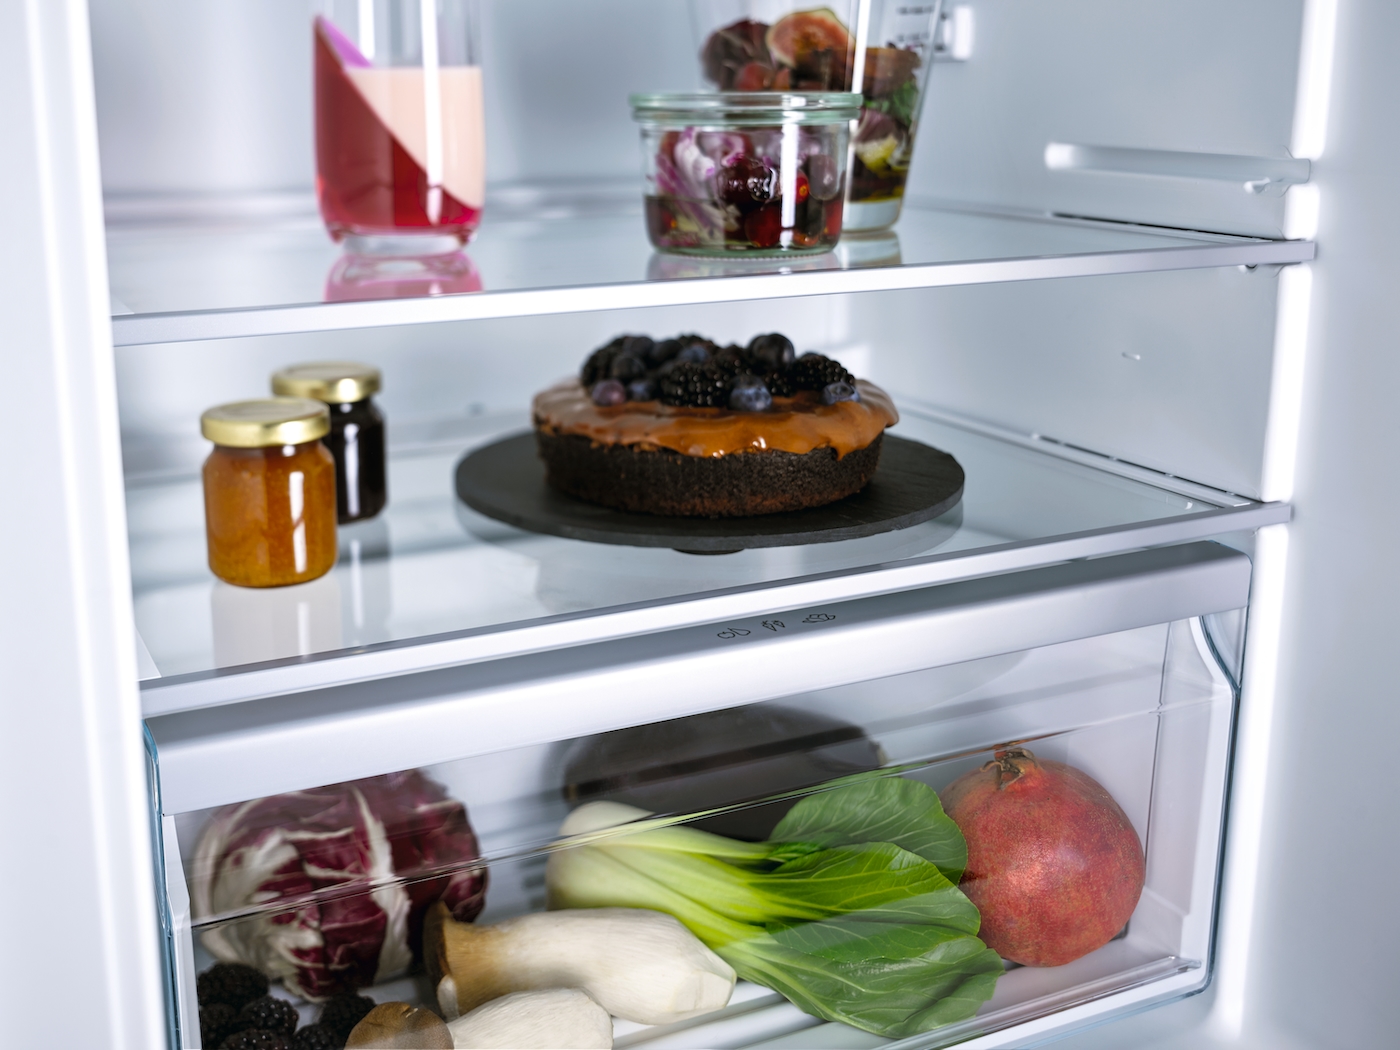 Iebūvējams ledusskapis ar automātisko intensīvo dzesēšanu, 87 cm augstums (K 7113 D) product photo Laydowns Detail View ZOOM